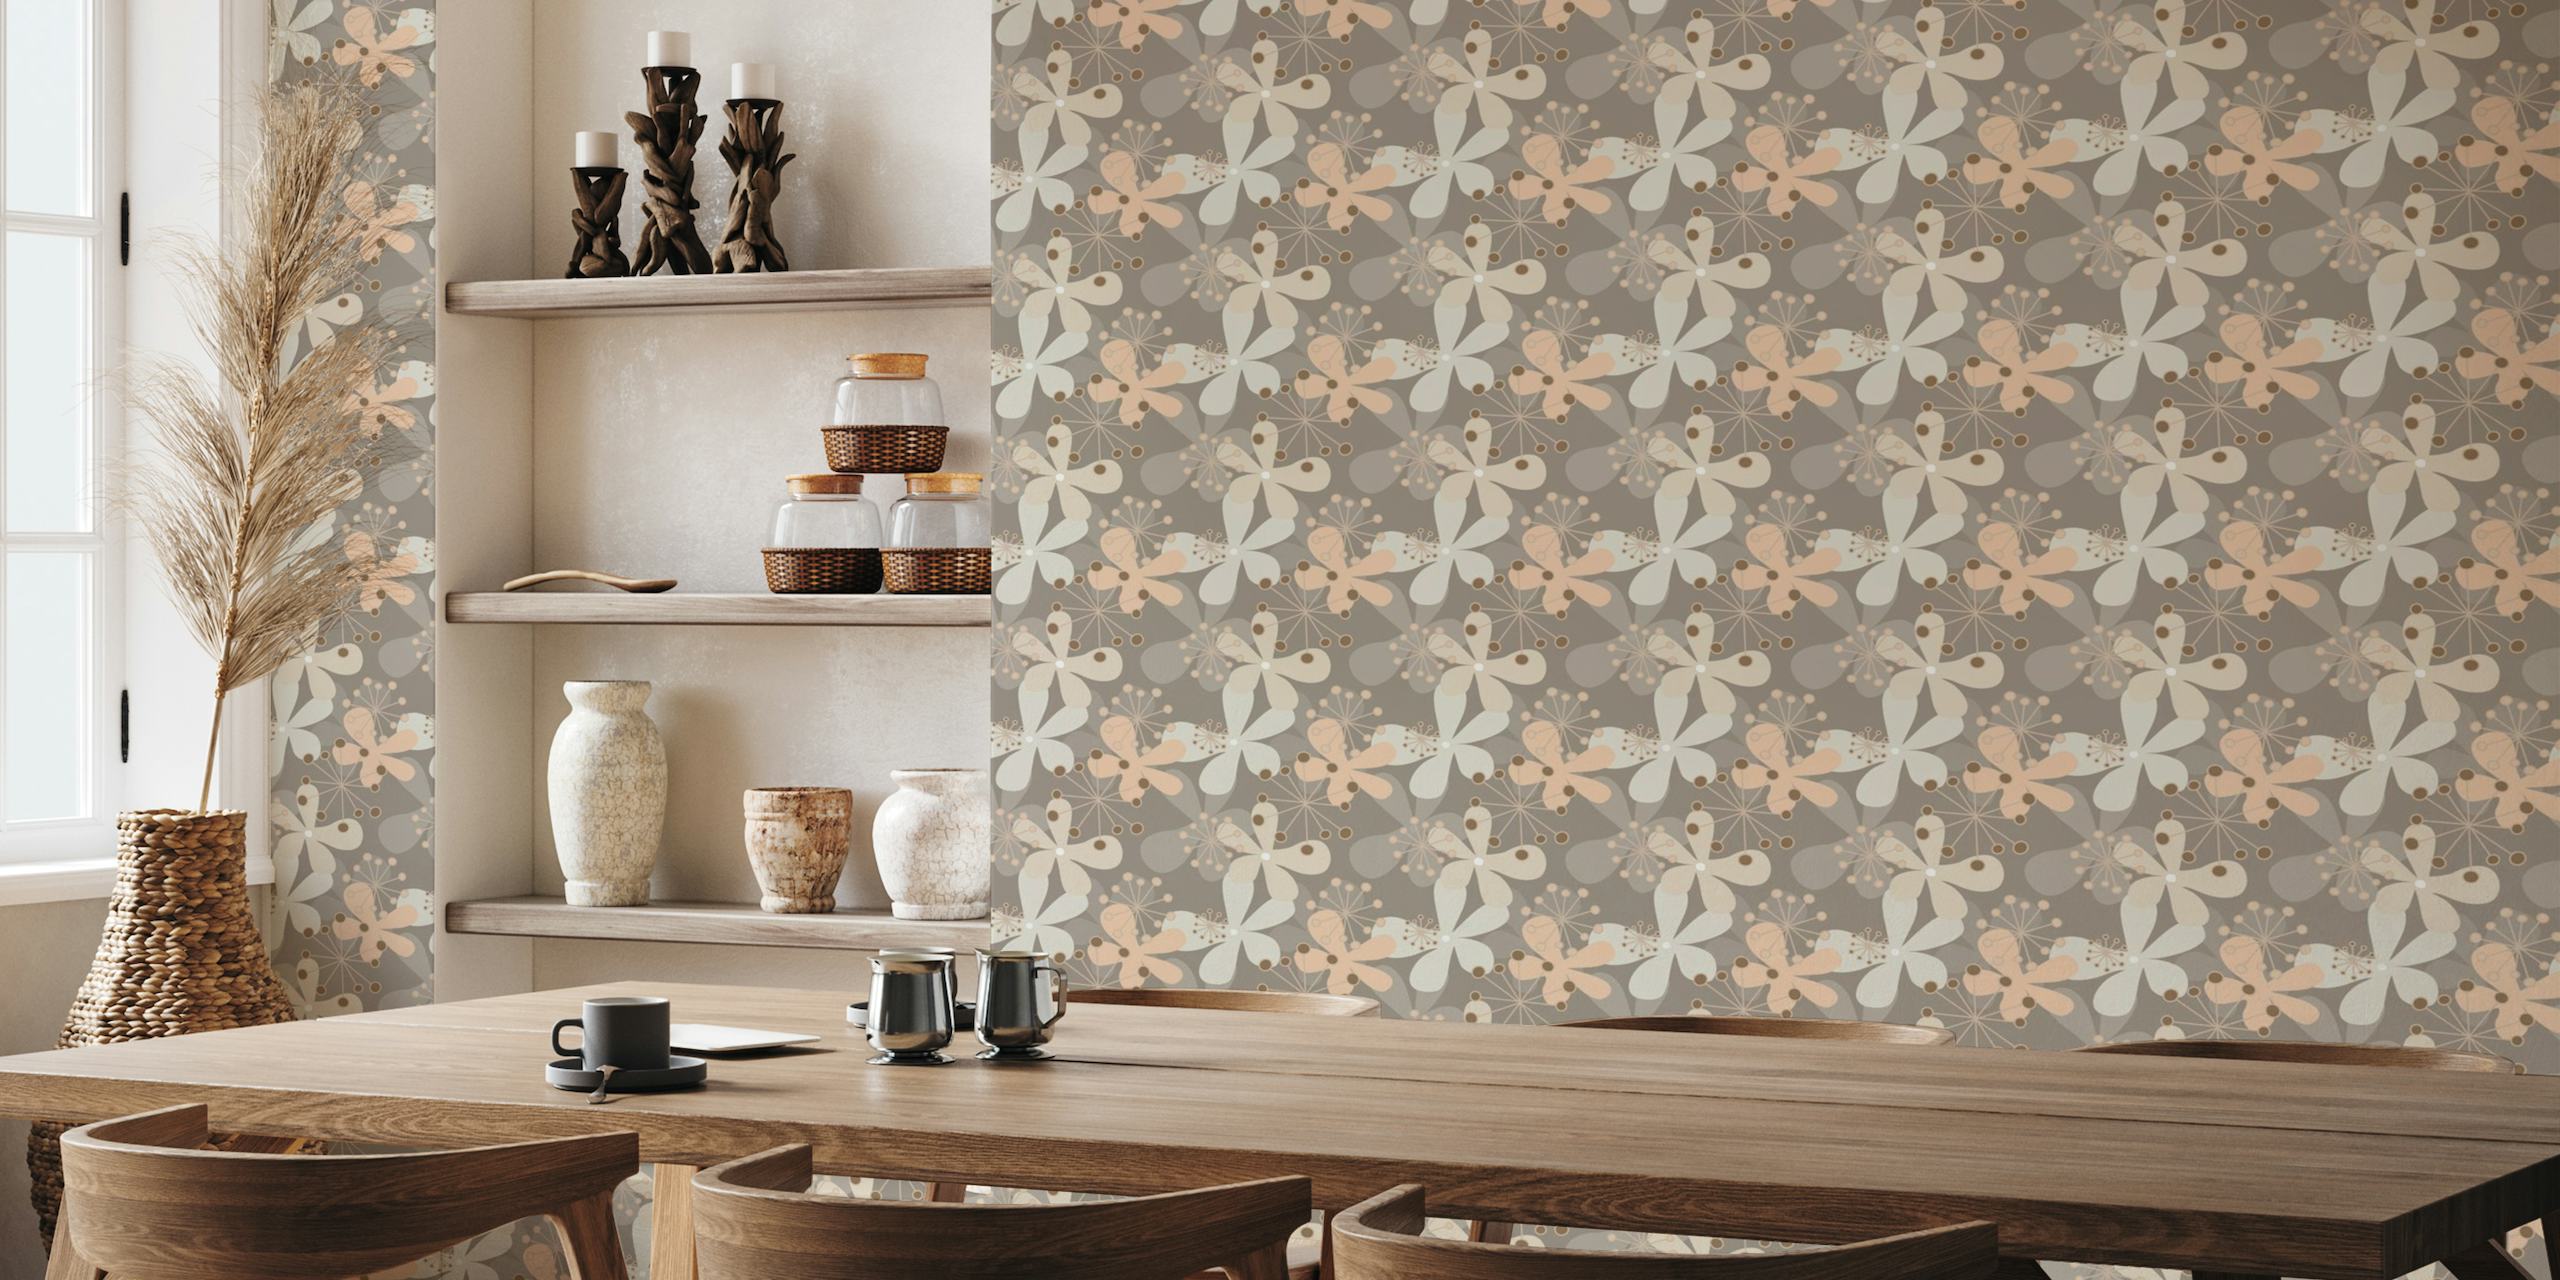 Mural de parede Midcentury Blooms Beige com padrões florais estilizados e detalhes geométricos em tons de bege